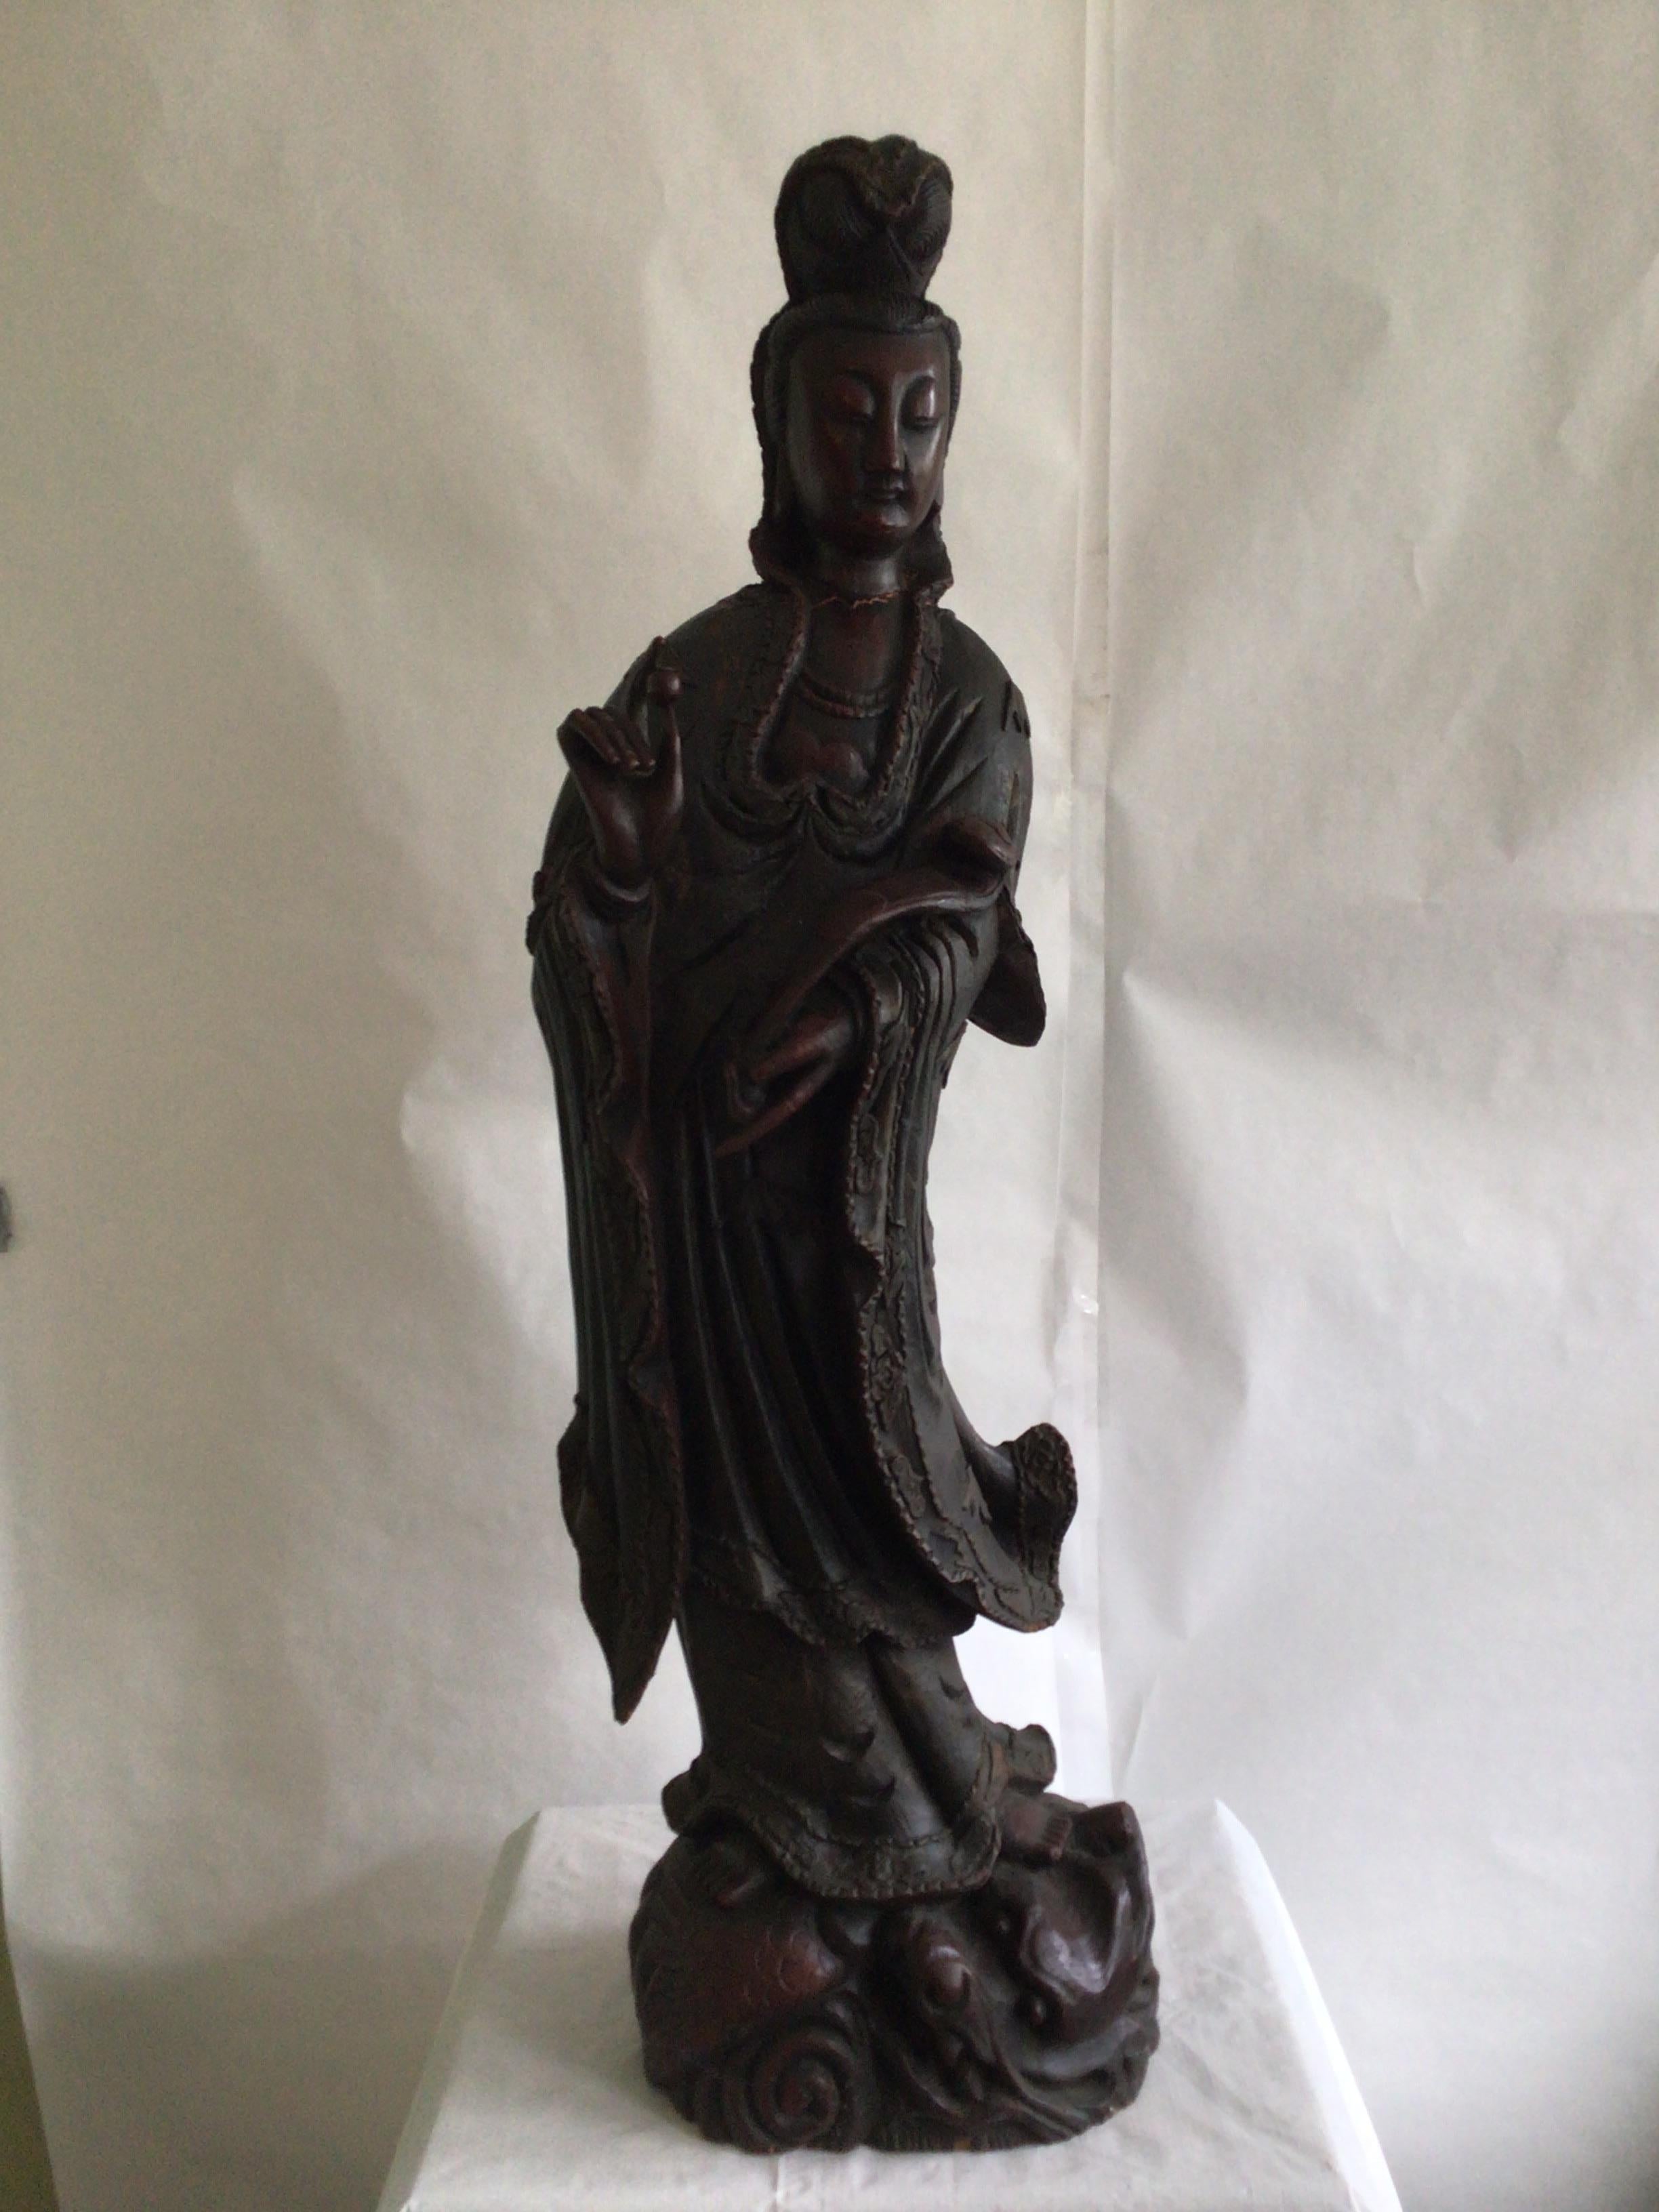 1920er Jahre geschnitzt Holz Guanyin Statue
Wunderschön fein geschnitzte Details
Beschädigungen wie auf den Bildern gezeigt
Riss im Hals